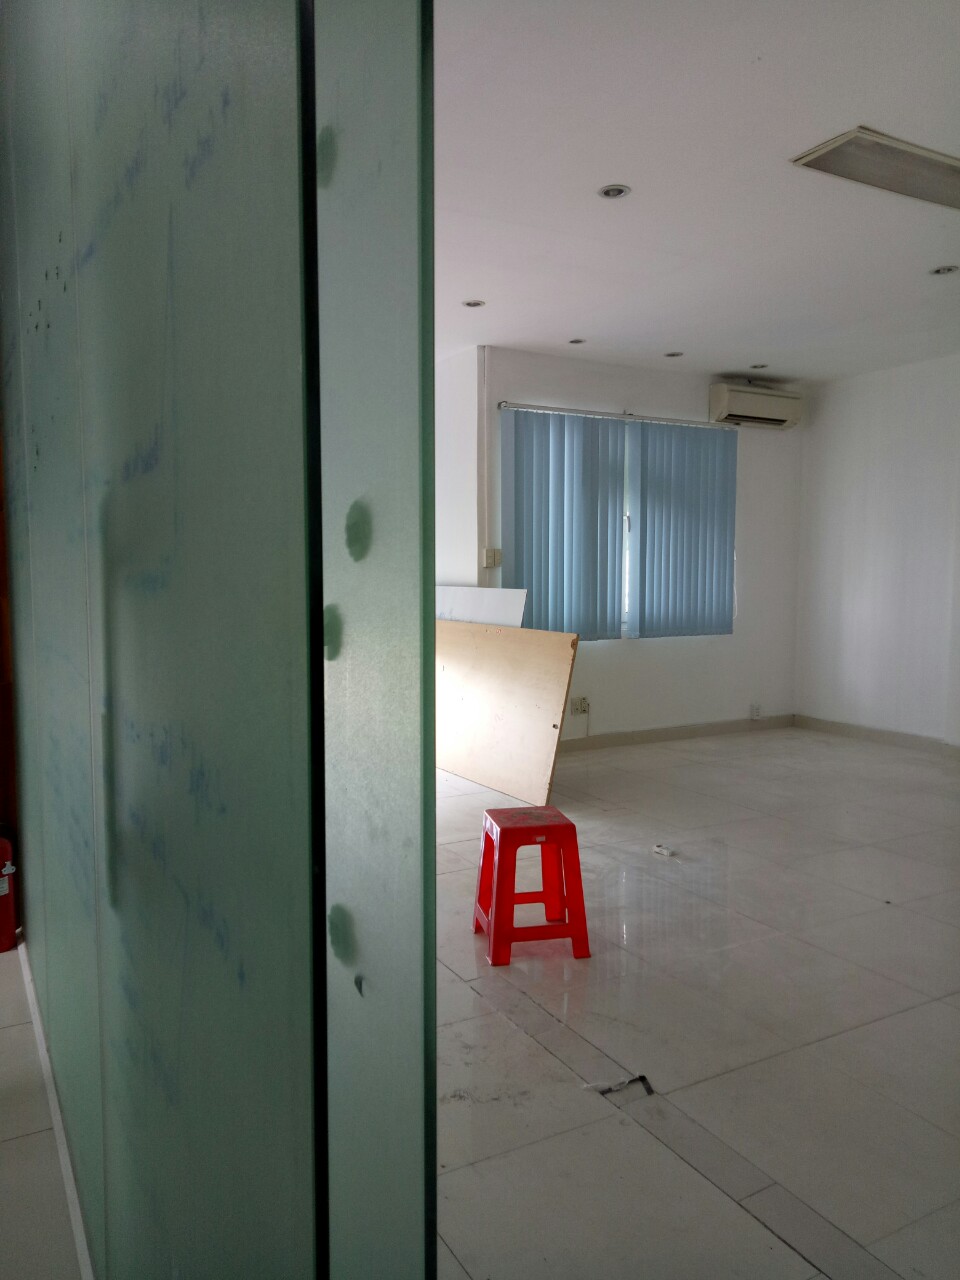 Văn phòng cho thuê giá rẻ Building đường Nguyễn Thái Bình,Q.tân bình. 40m - 80m